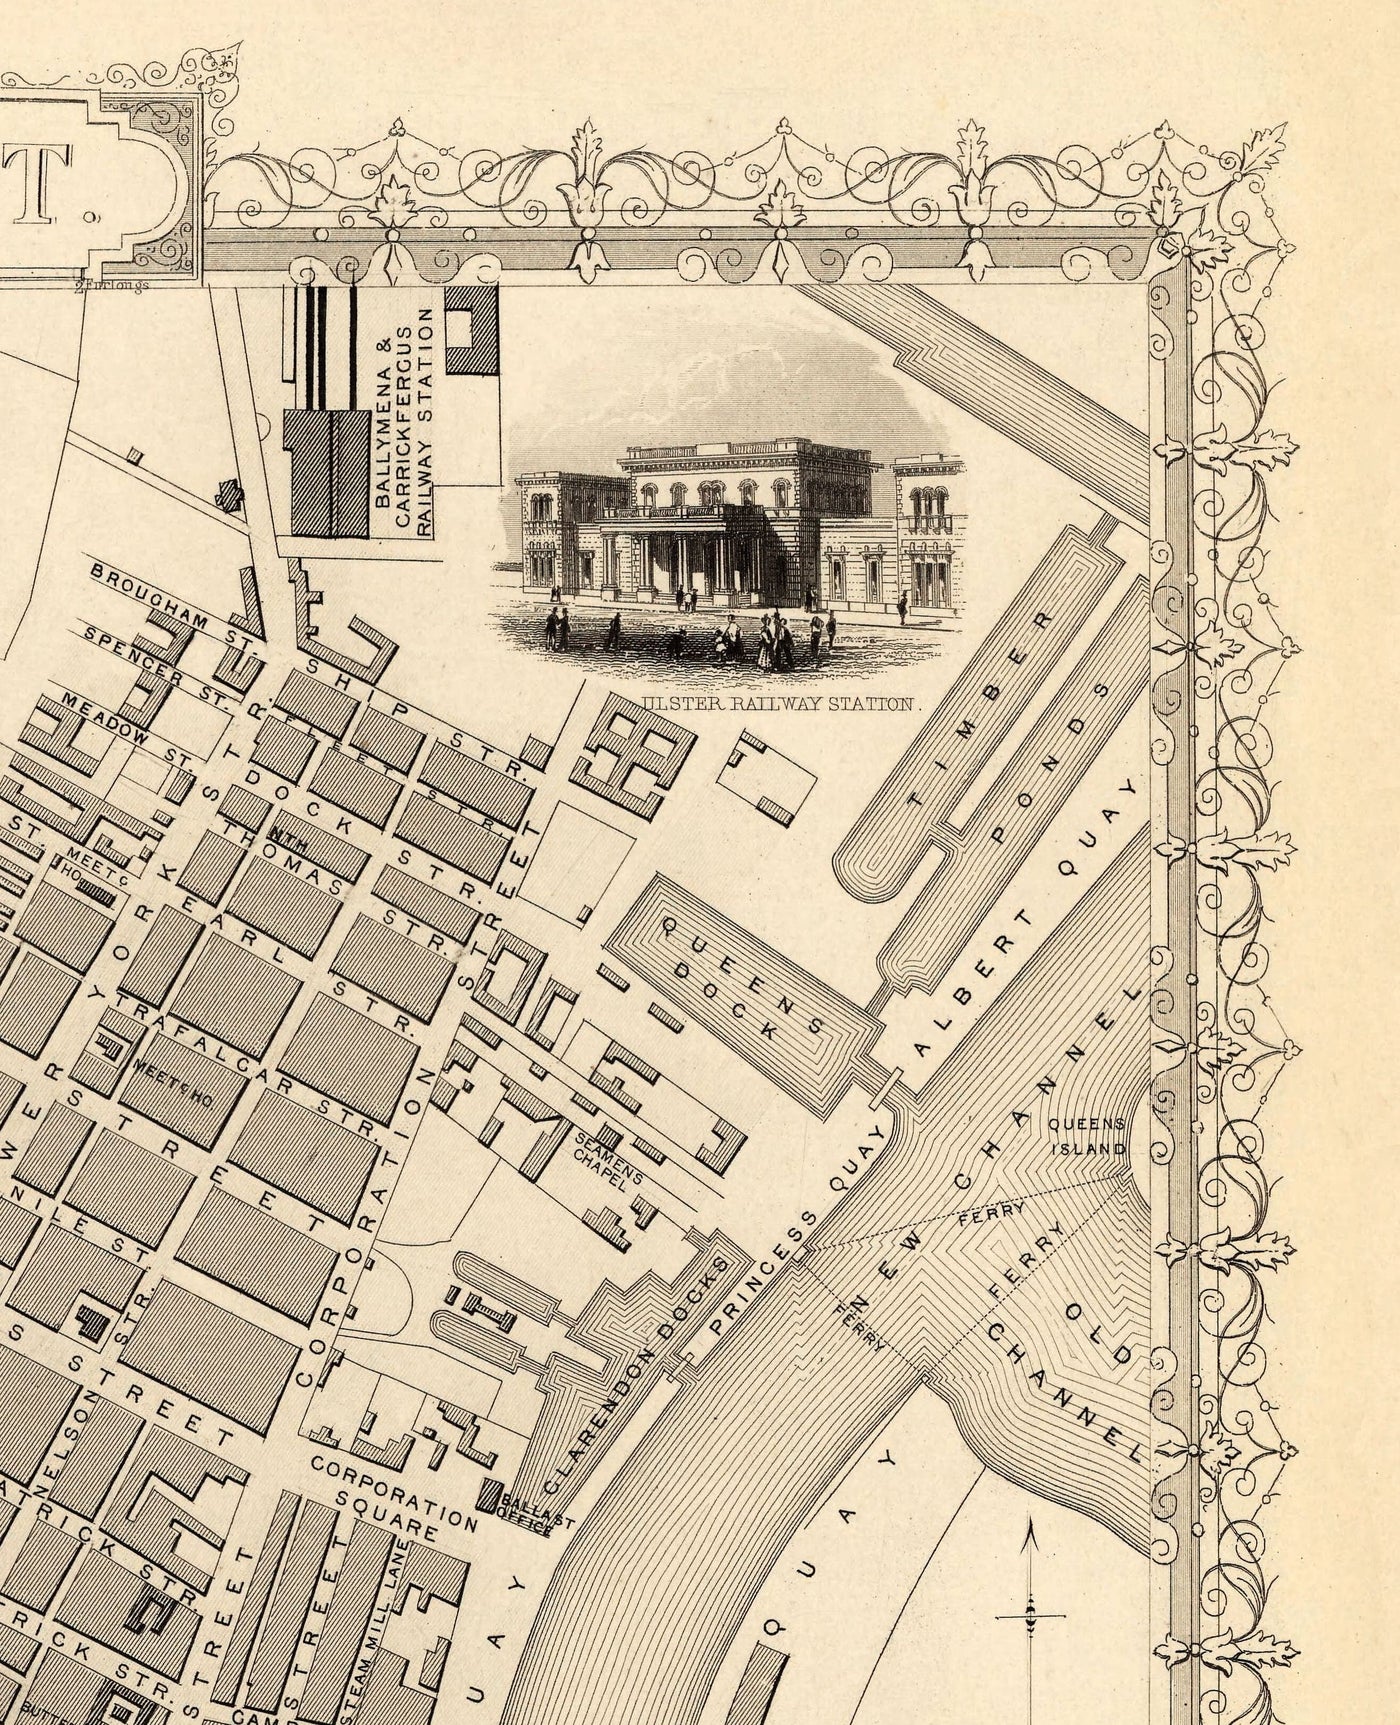 Alte Karte von Belfast, Irland im Jahr 1851 von Tallis & Rapkin - Queens College, Ulster Railway Station, Ballast Office,